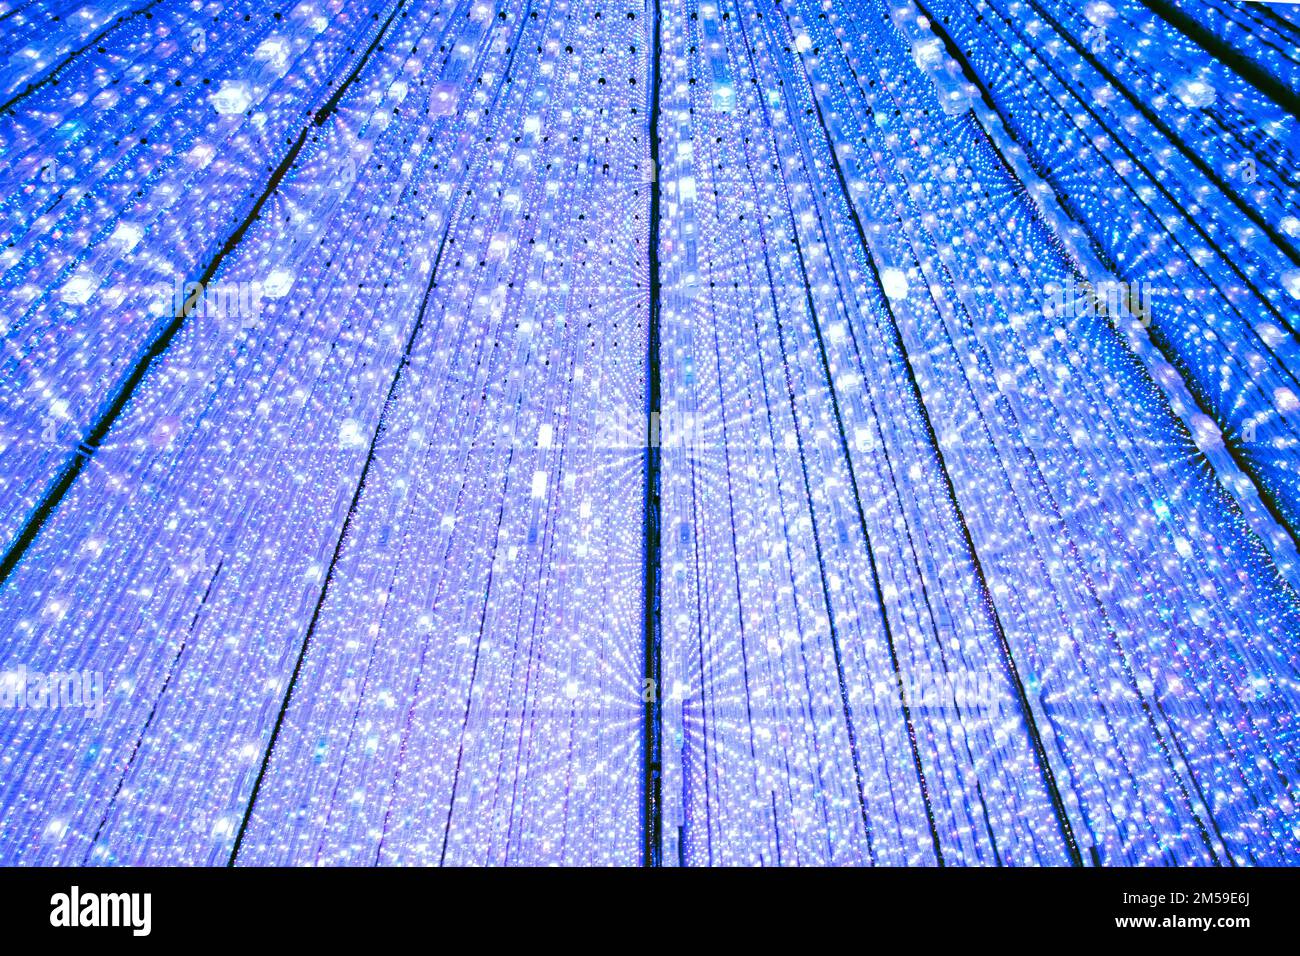 La salle Infinte Crystal Universe dans l'exposition d'art immersive de TeamLab planètes, Tokyo, Japon. Banque D'Images